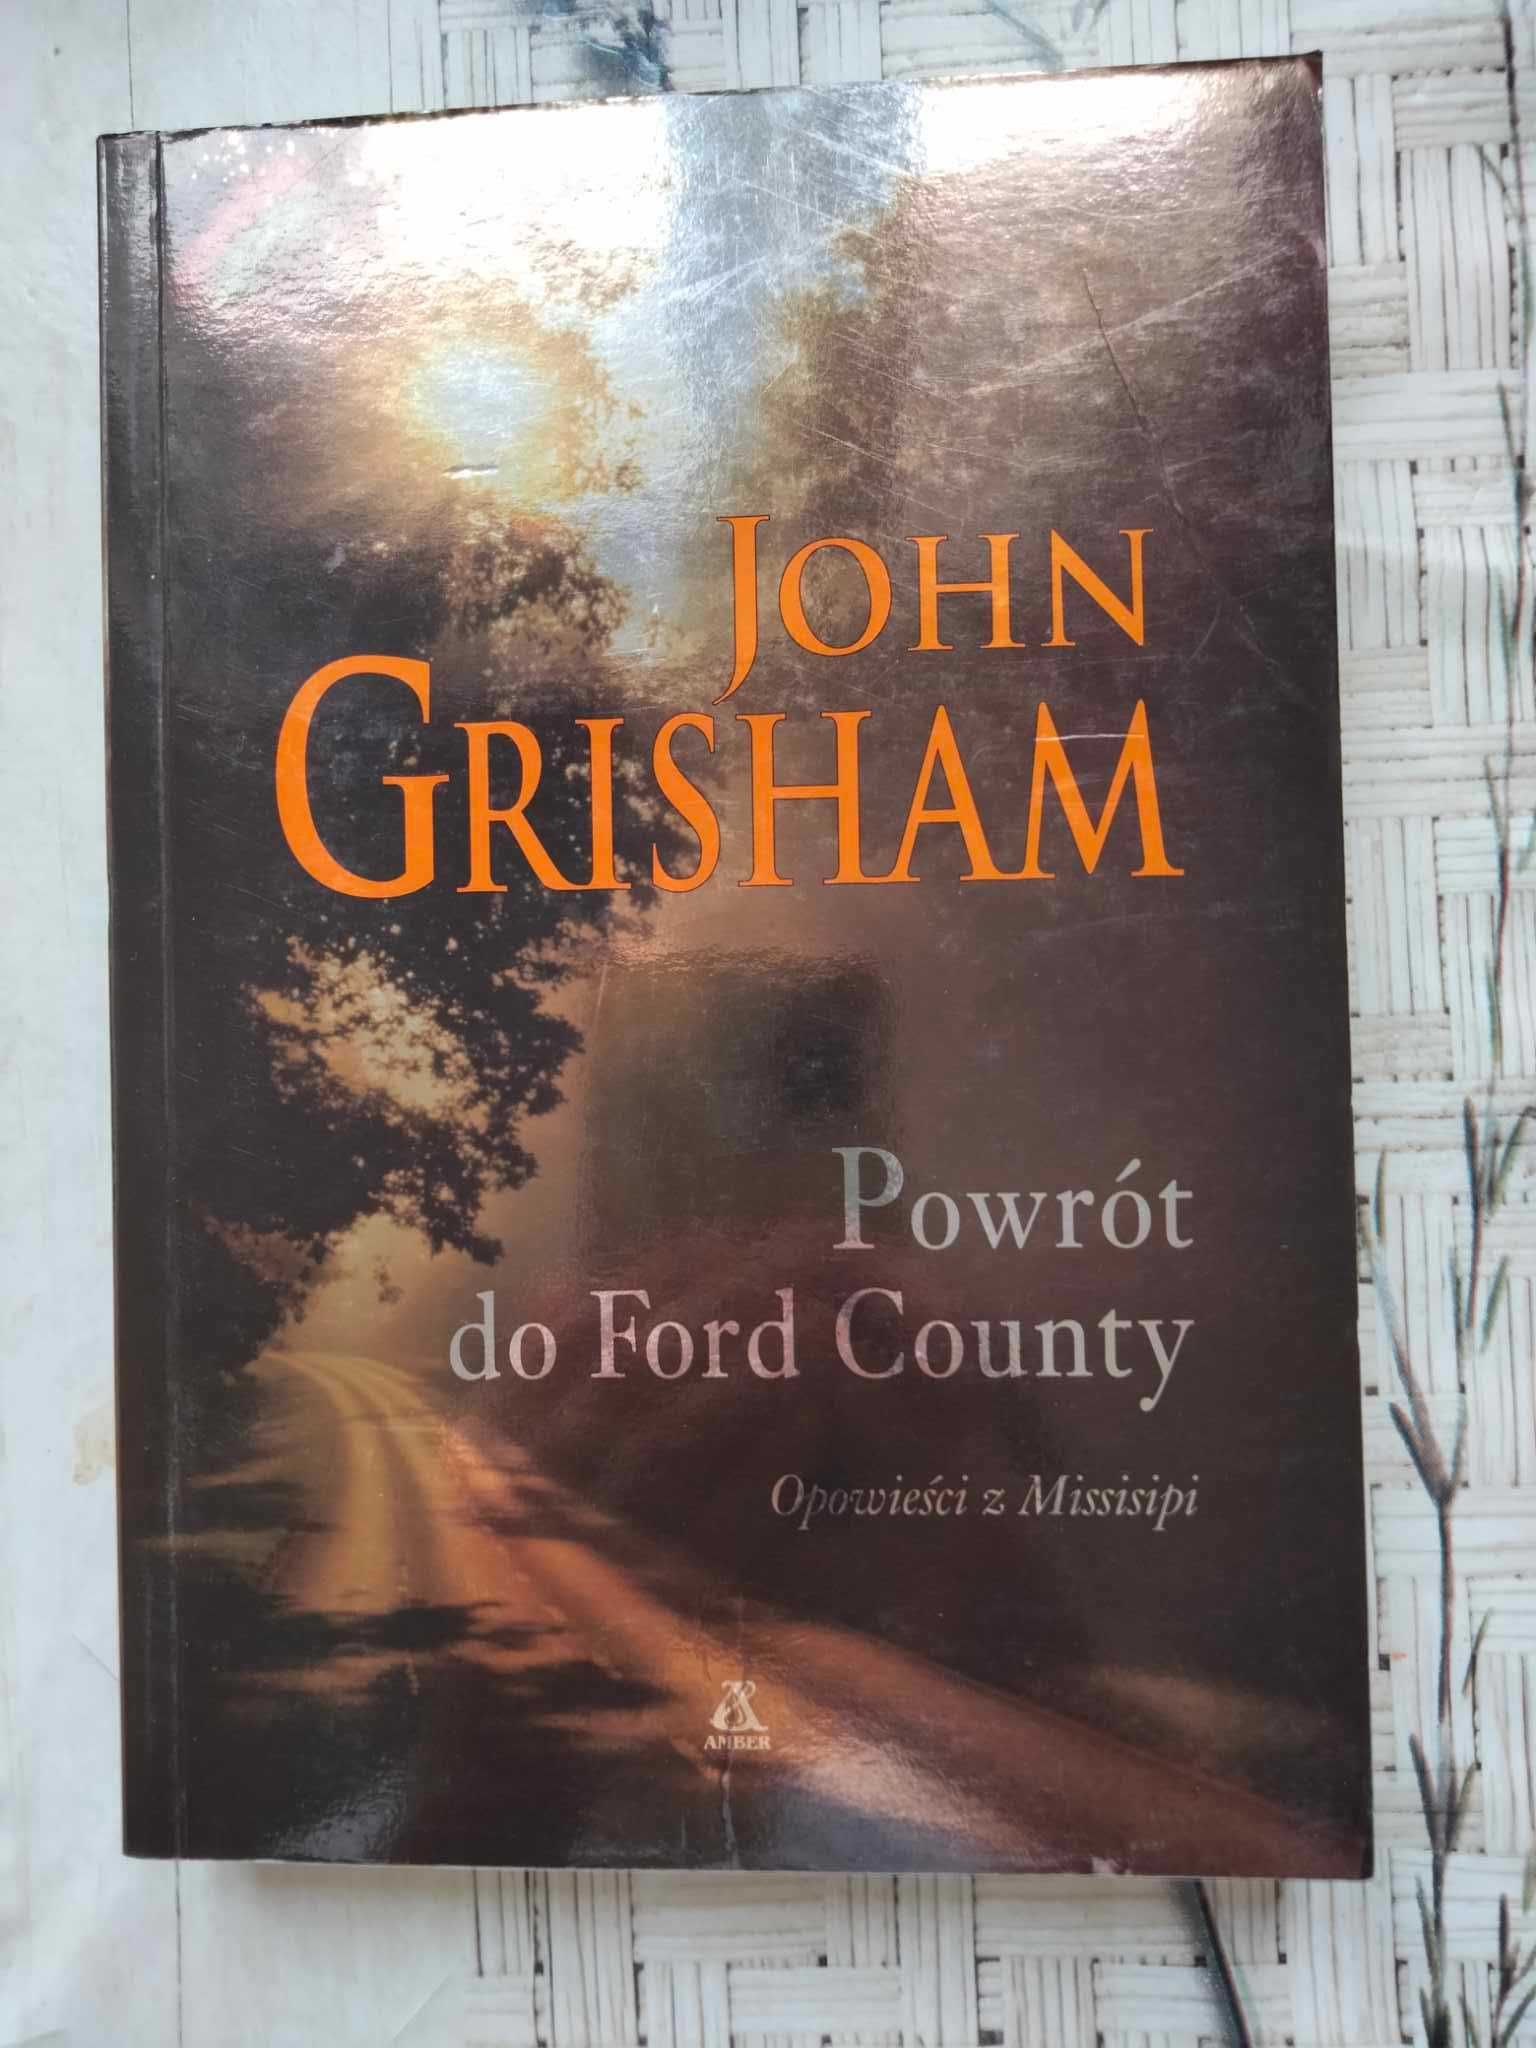 "Powrót do Ford County: opowieści z Missisipi" John Grisham